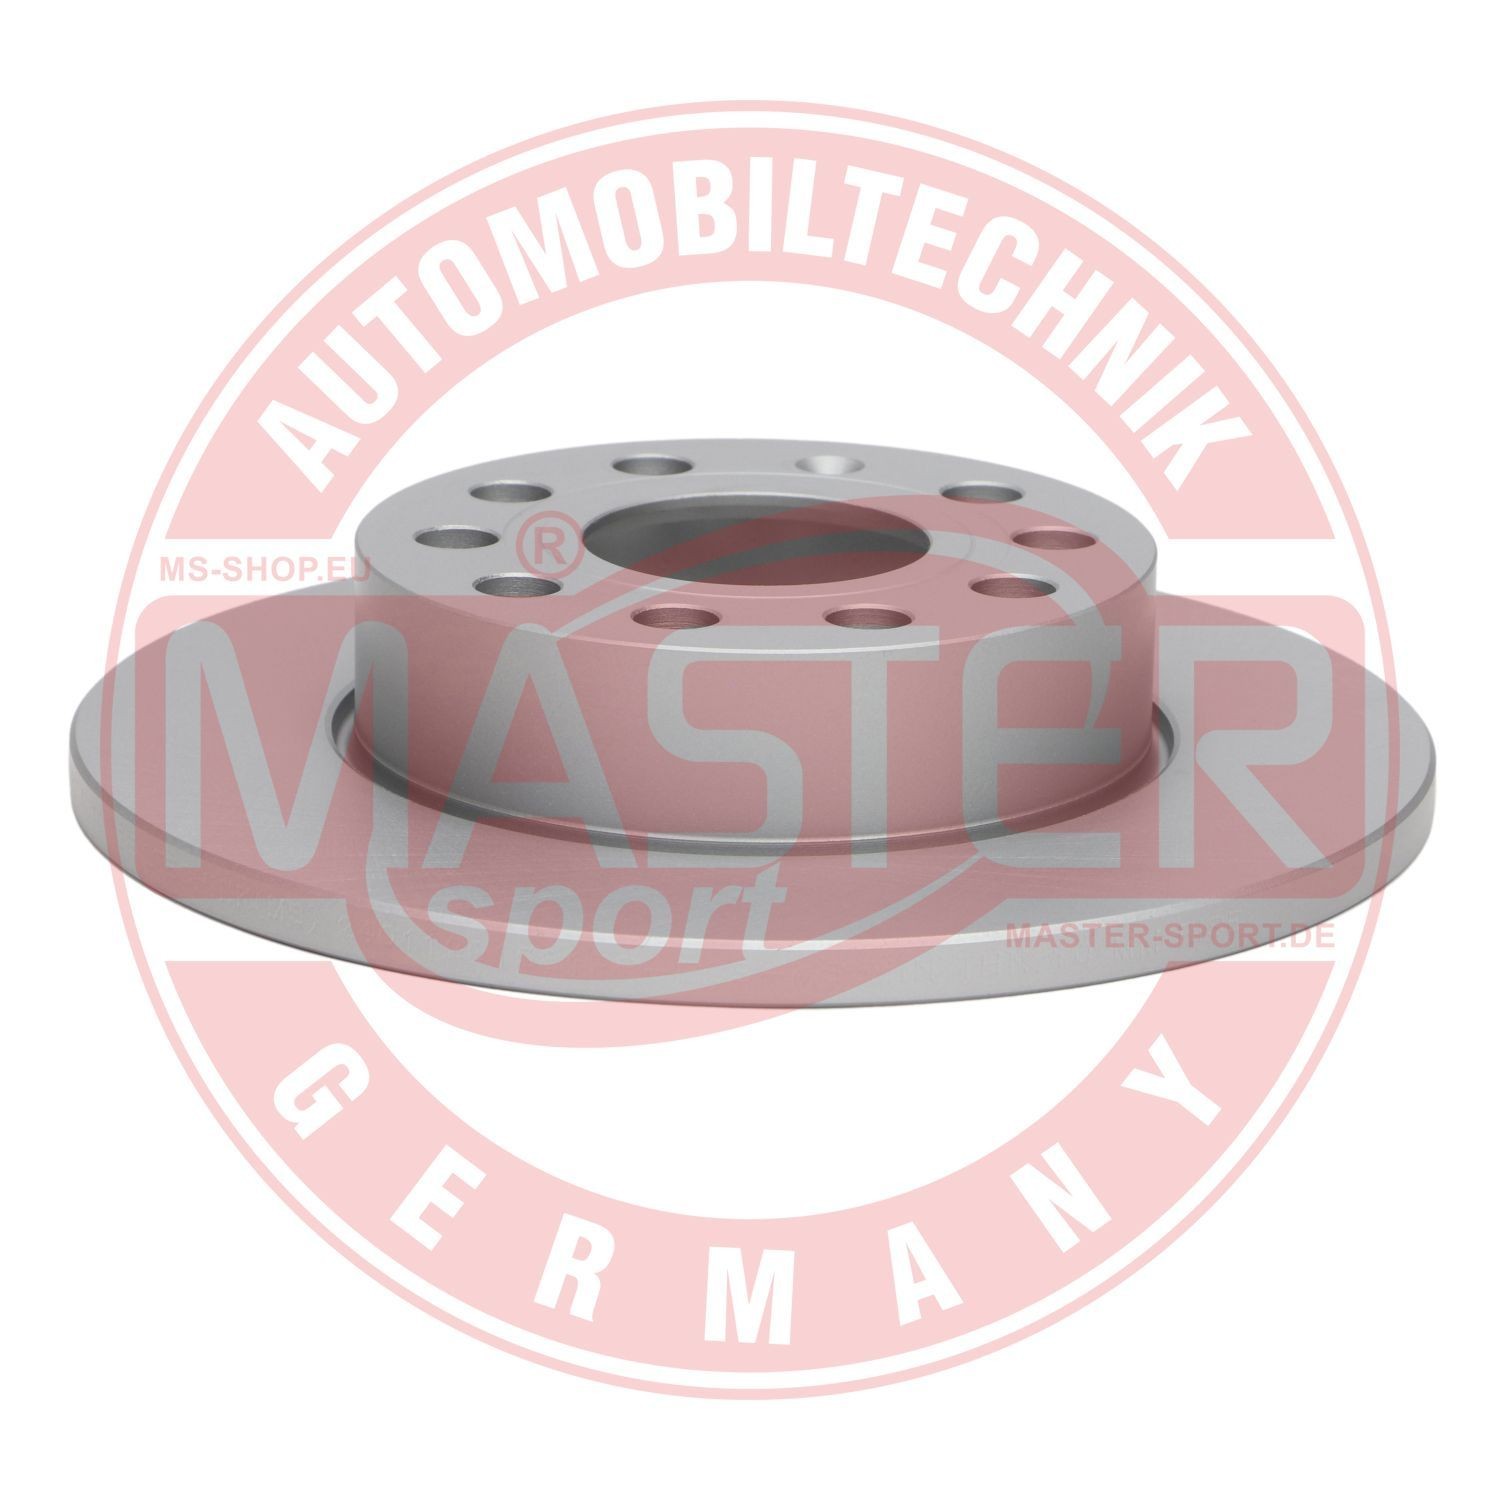 Volkswagen TOURAN Disc brakes 15307238 MASTER-SPORT 24011201581PR-PCS-MS online buy